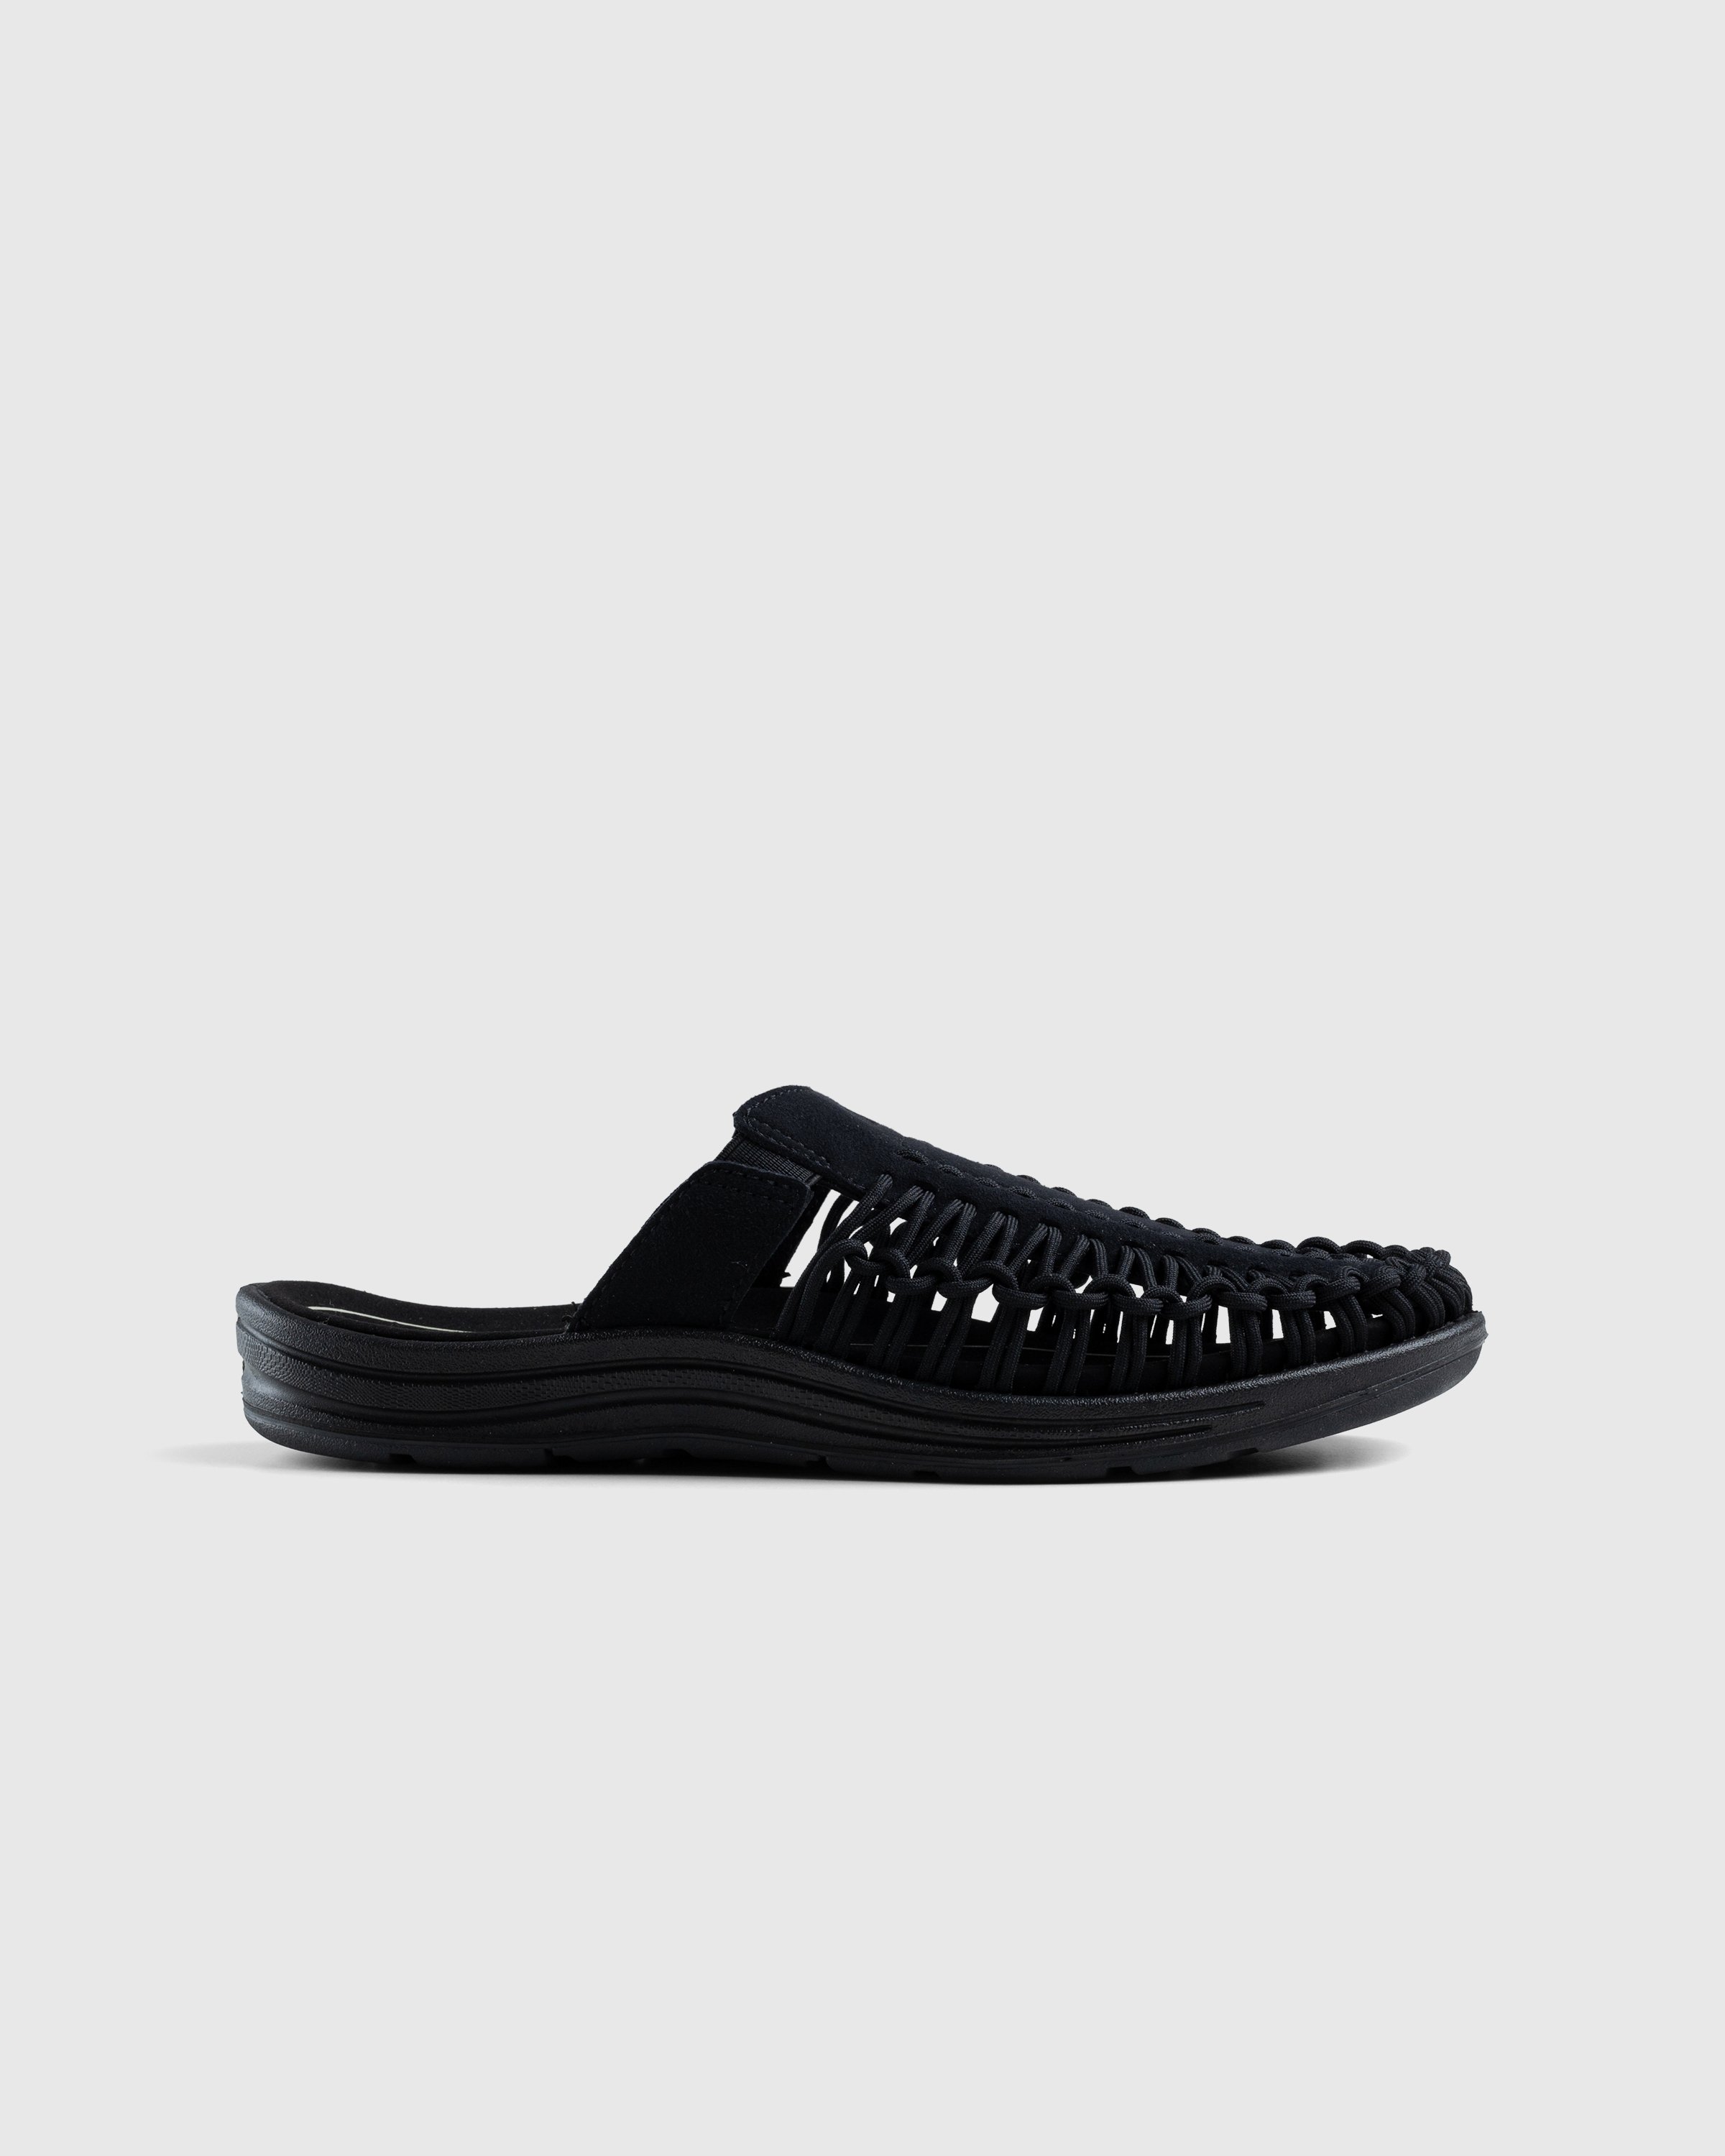 Keen - Uneek II Slide Black - Footwear - Black - Image 1